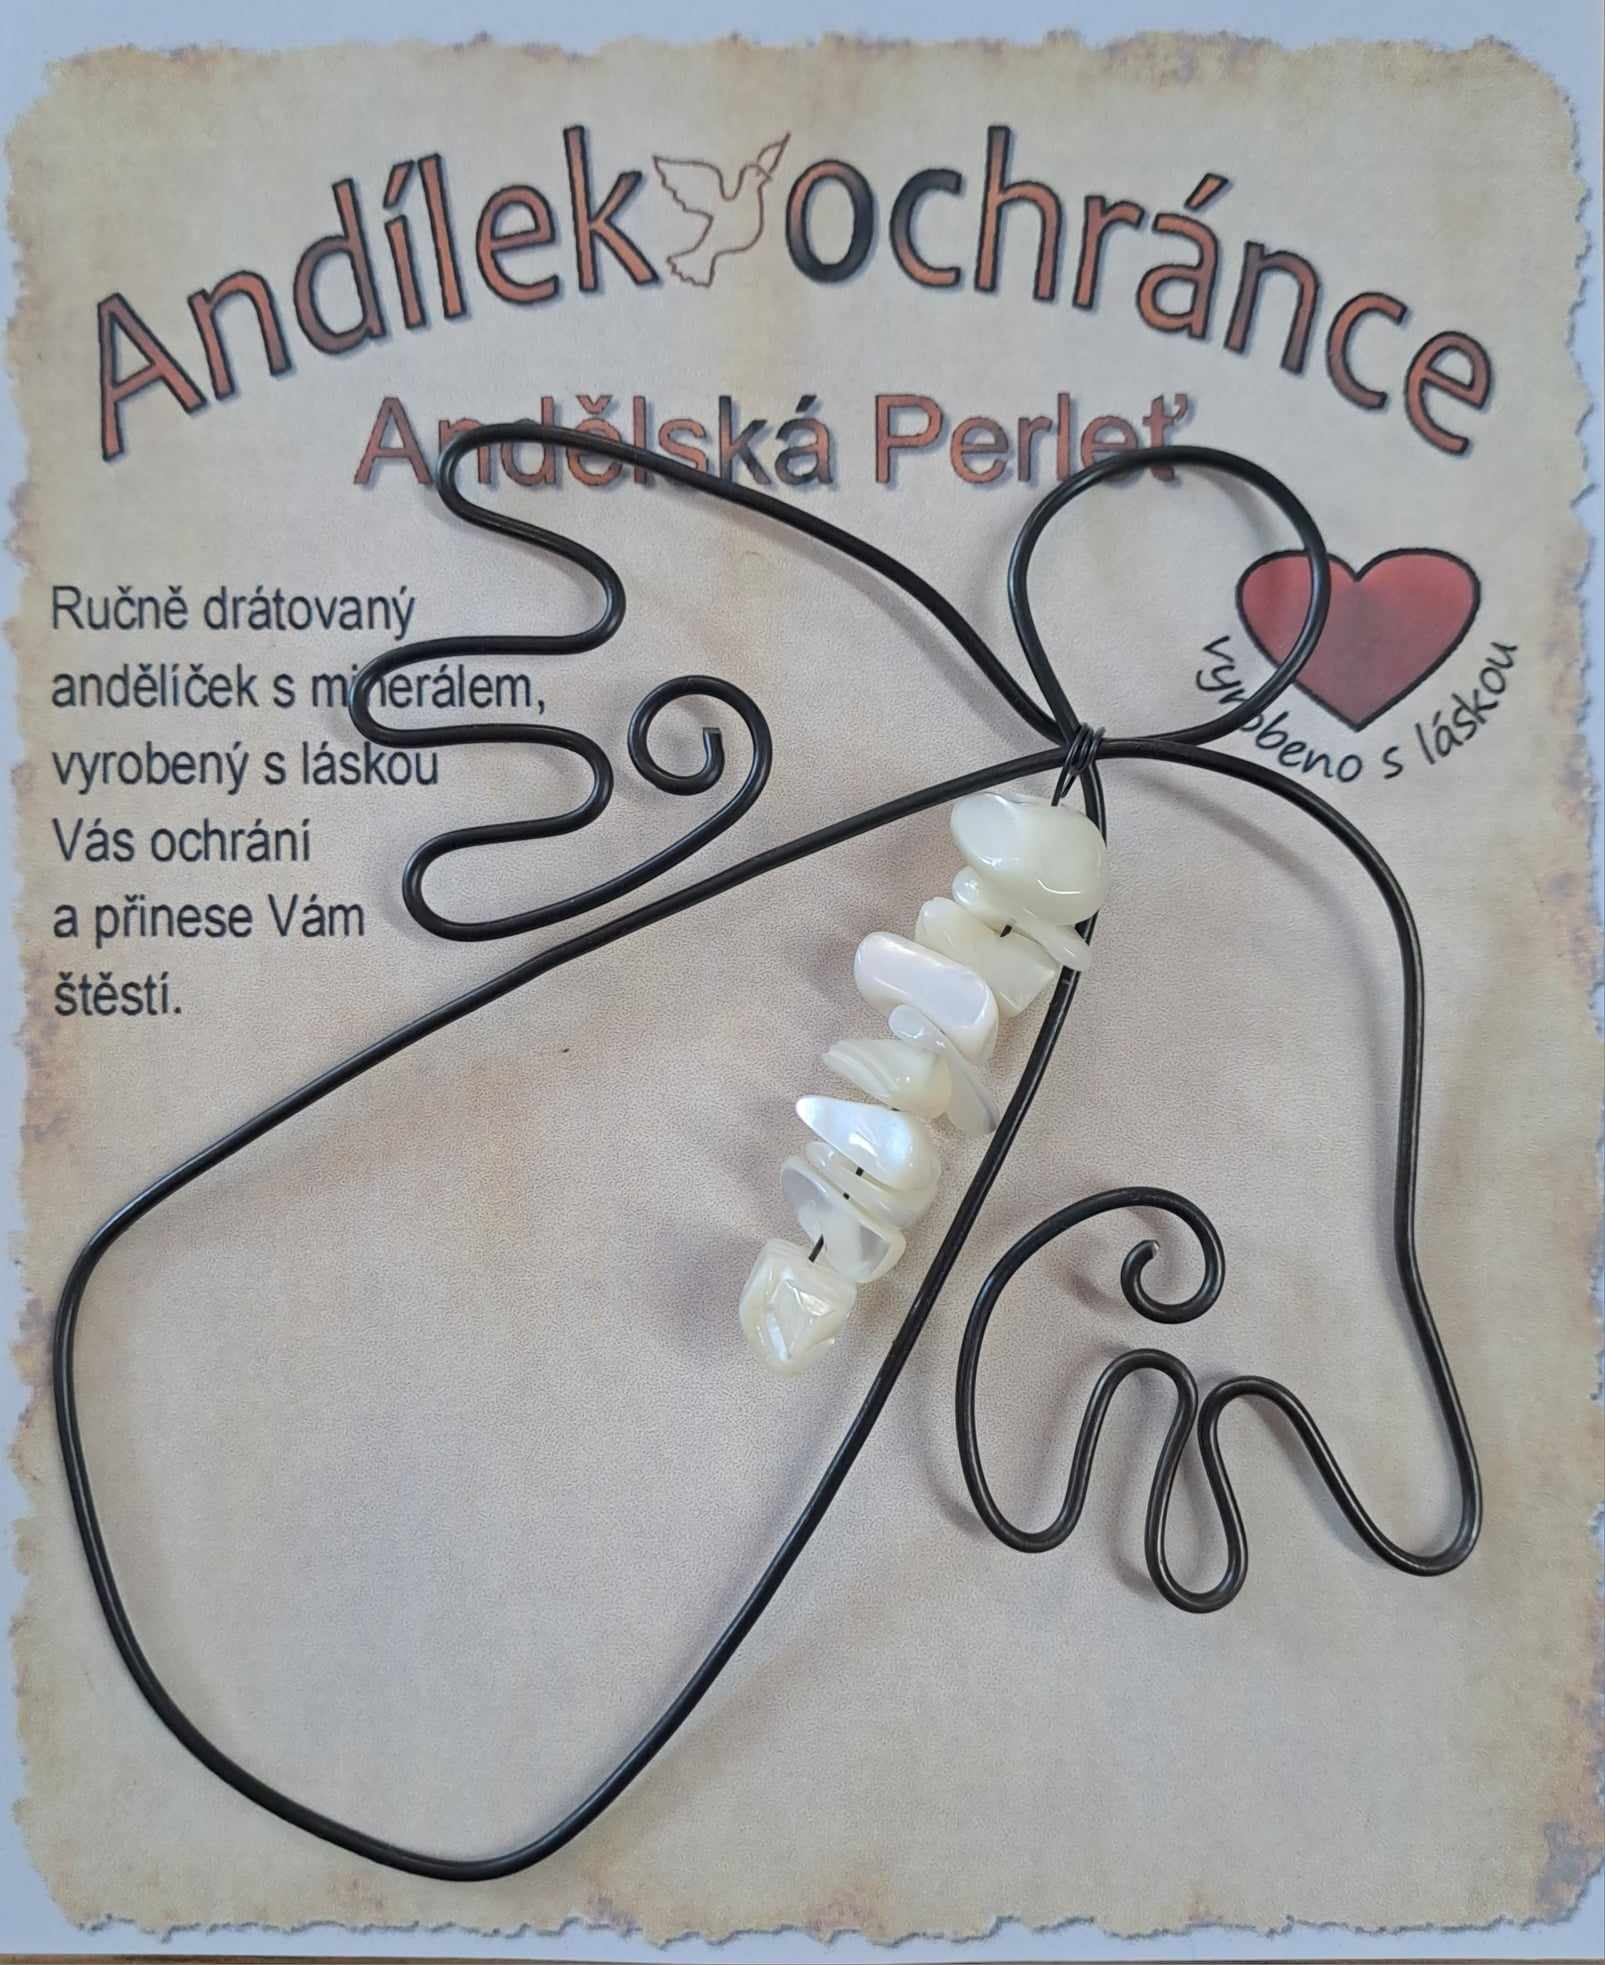 Drátěný Andílek ochránce s minerály Andělská perleť